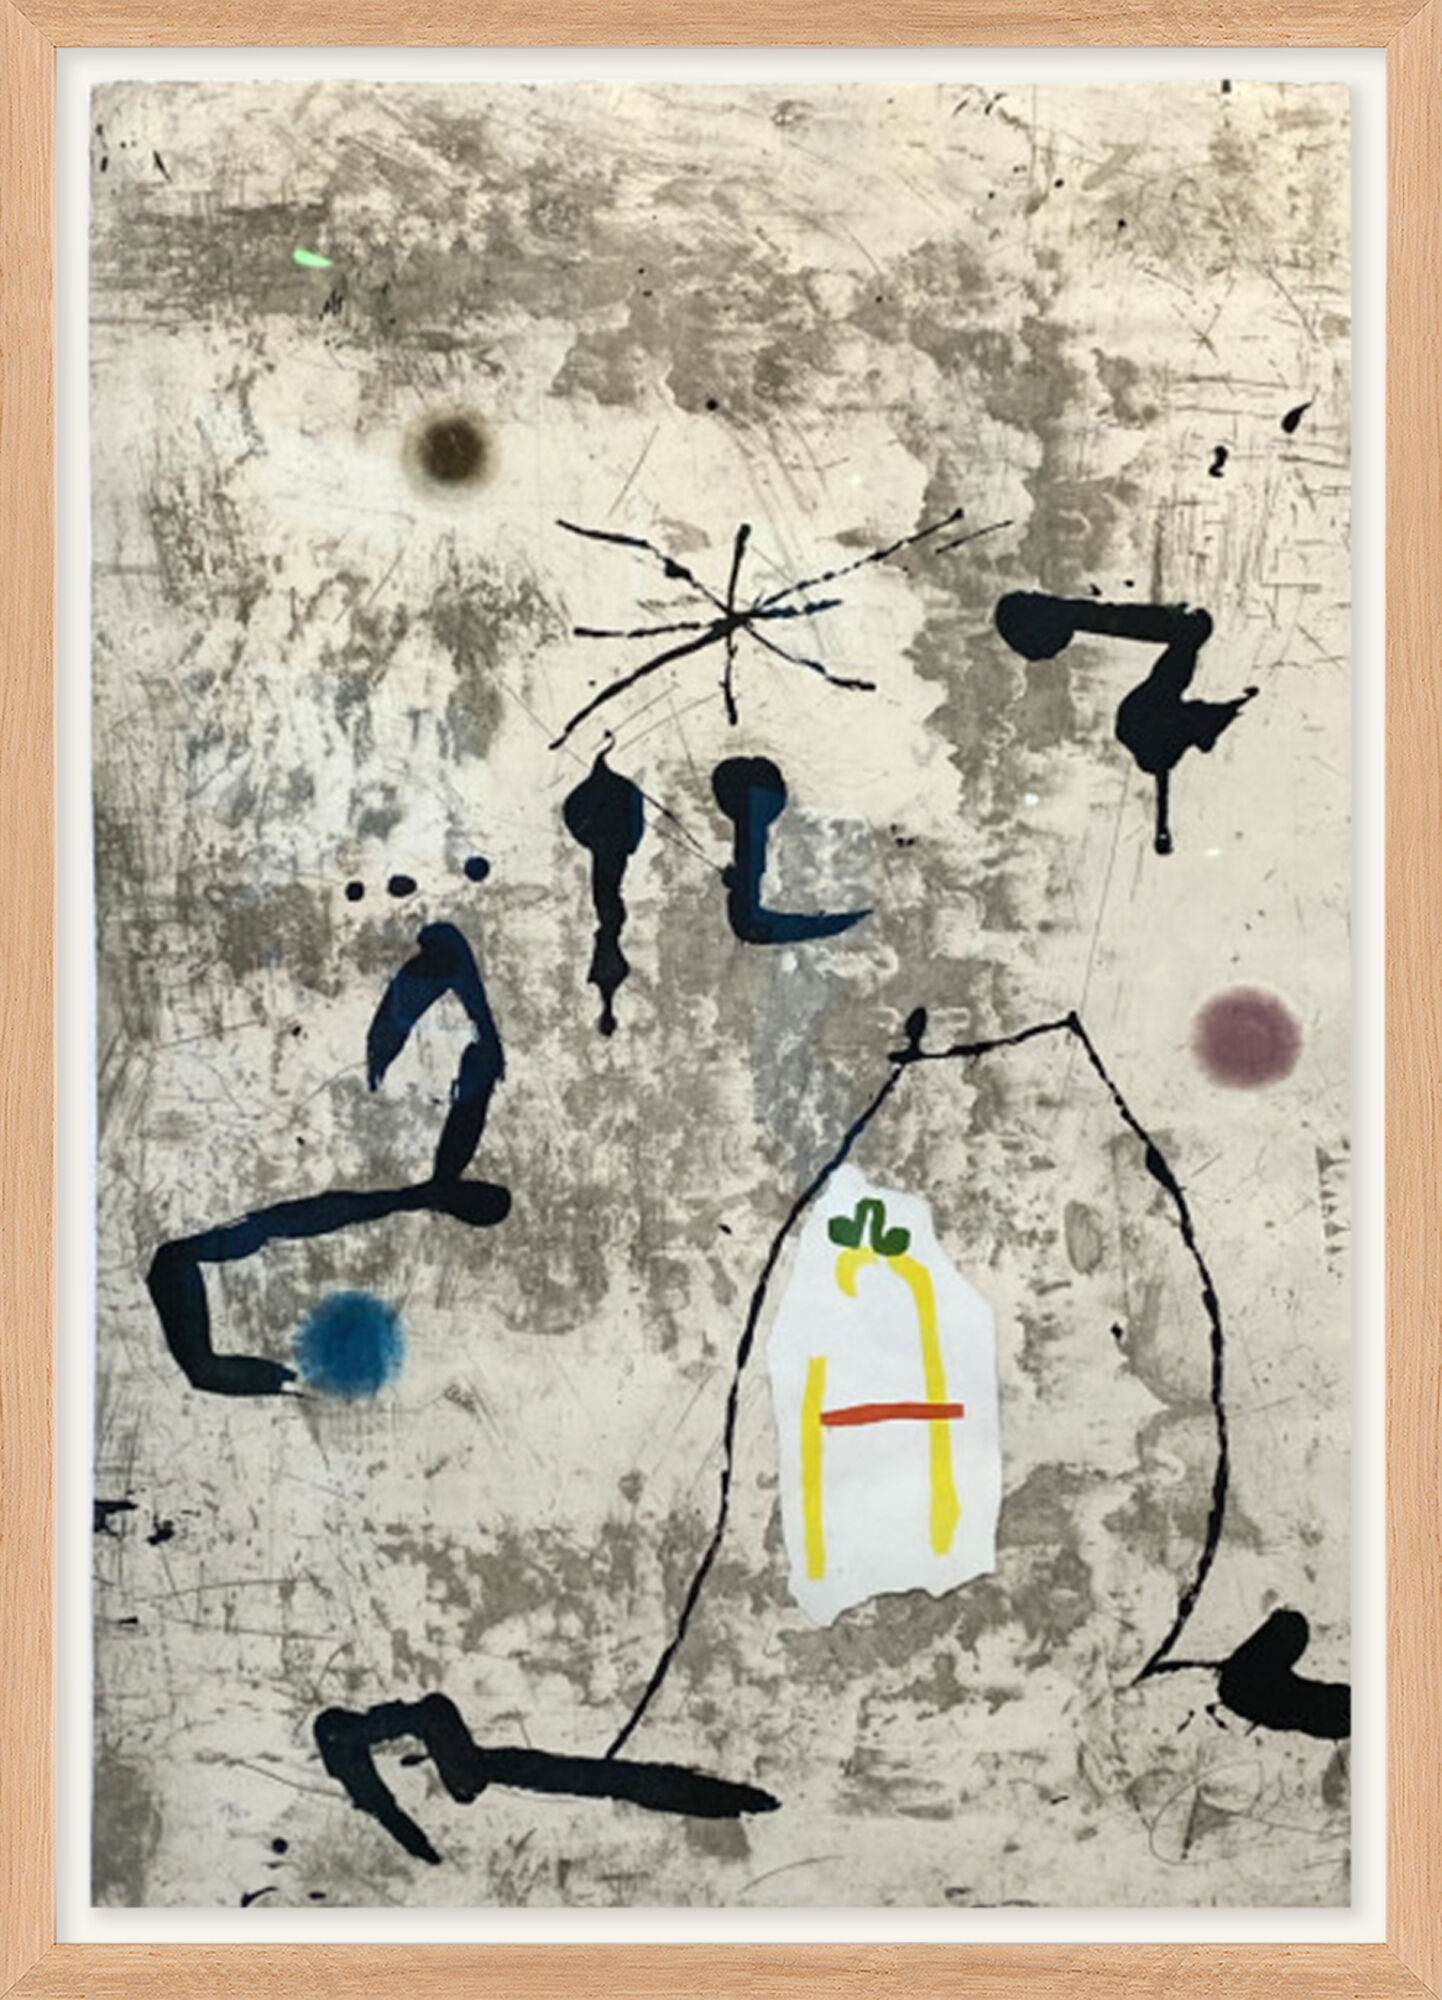 Beeld "Personatge I Estels V" (1979) von Joan Miró